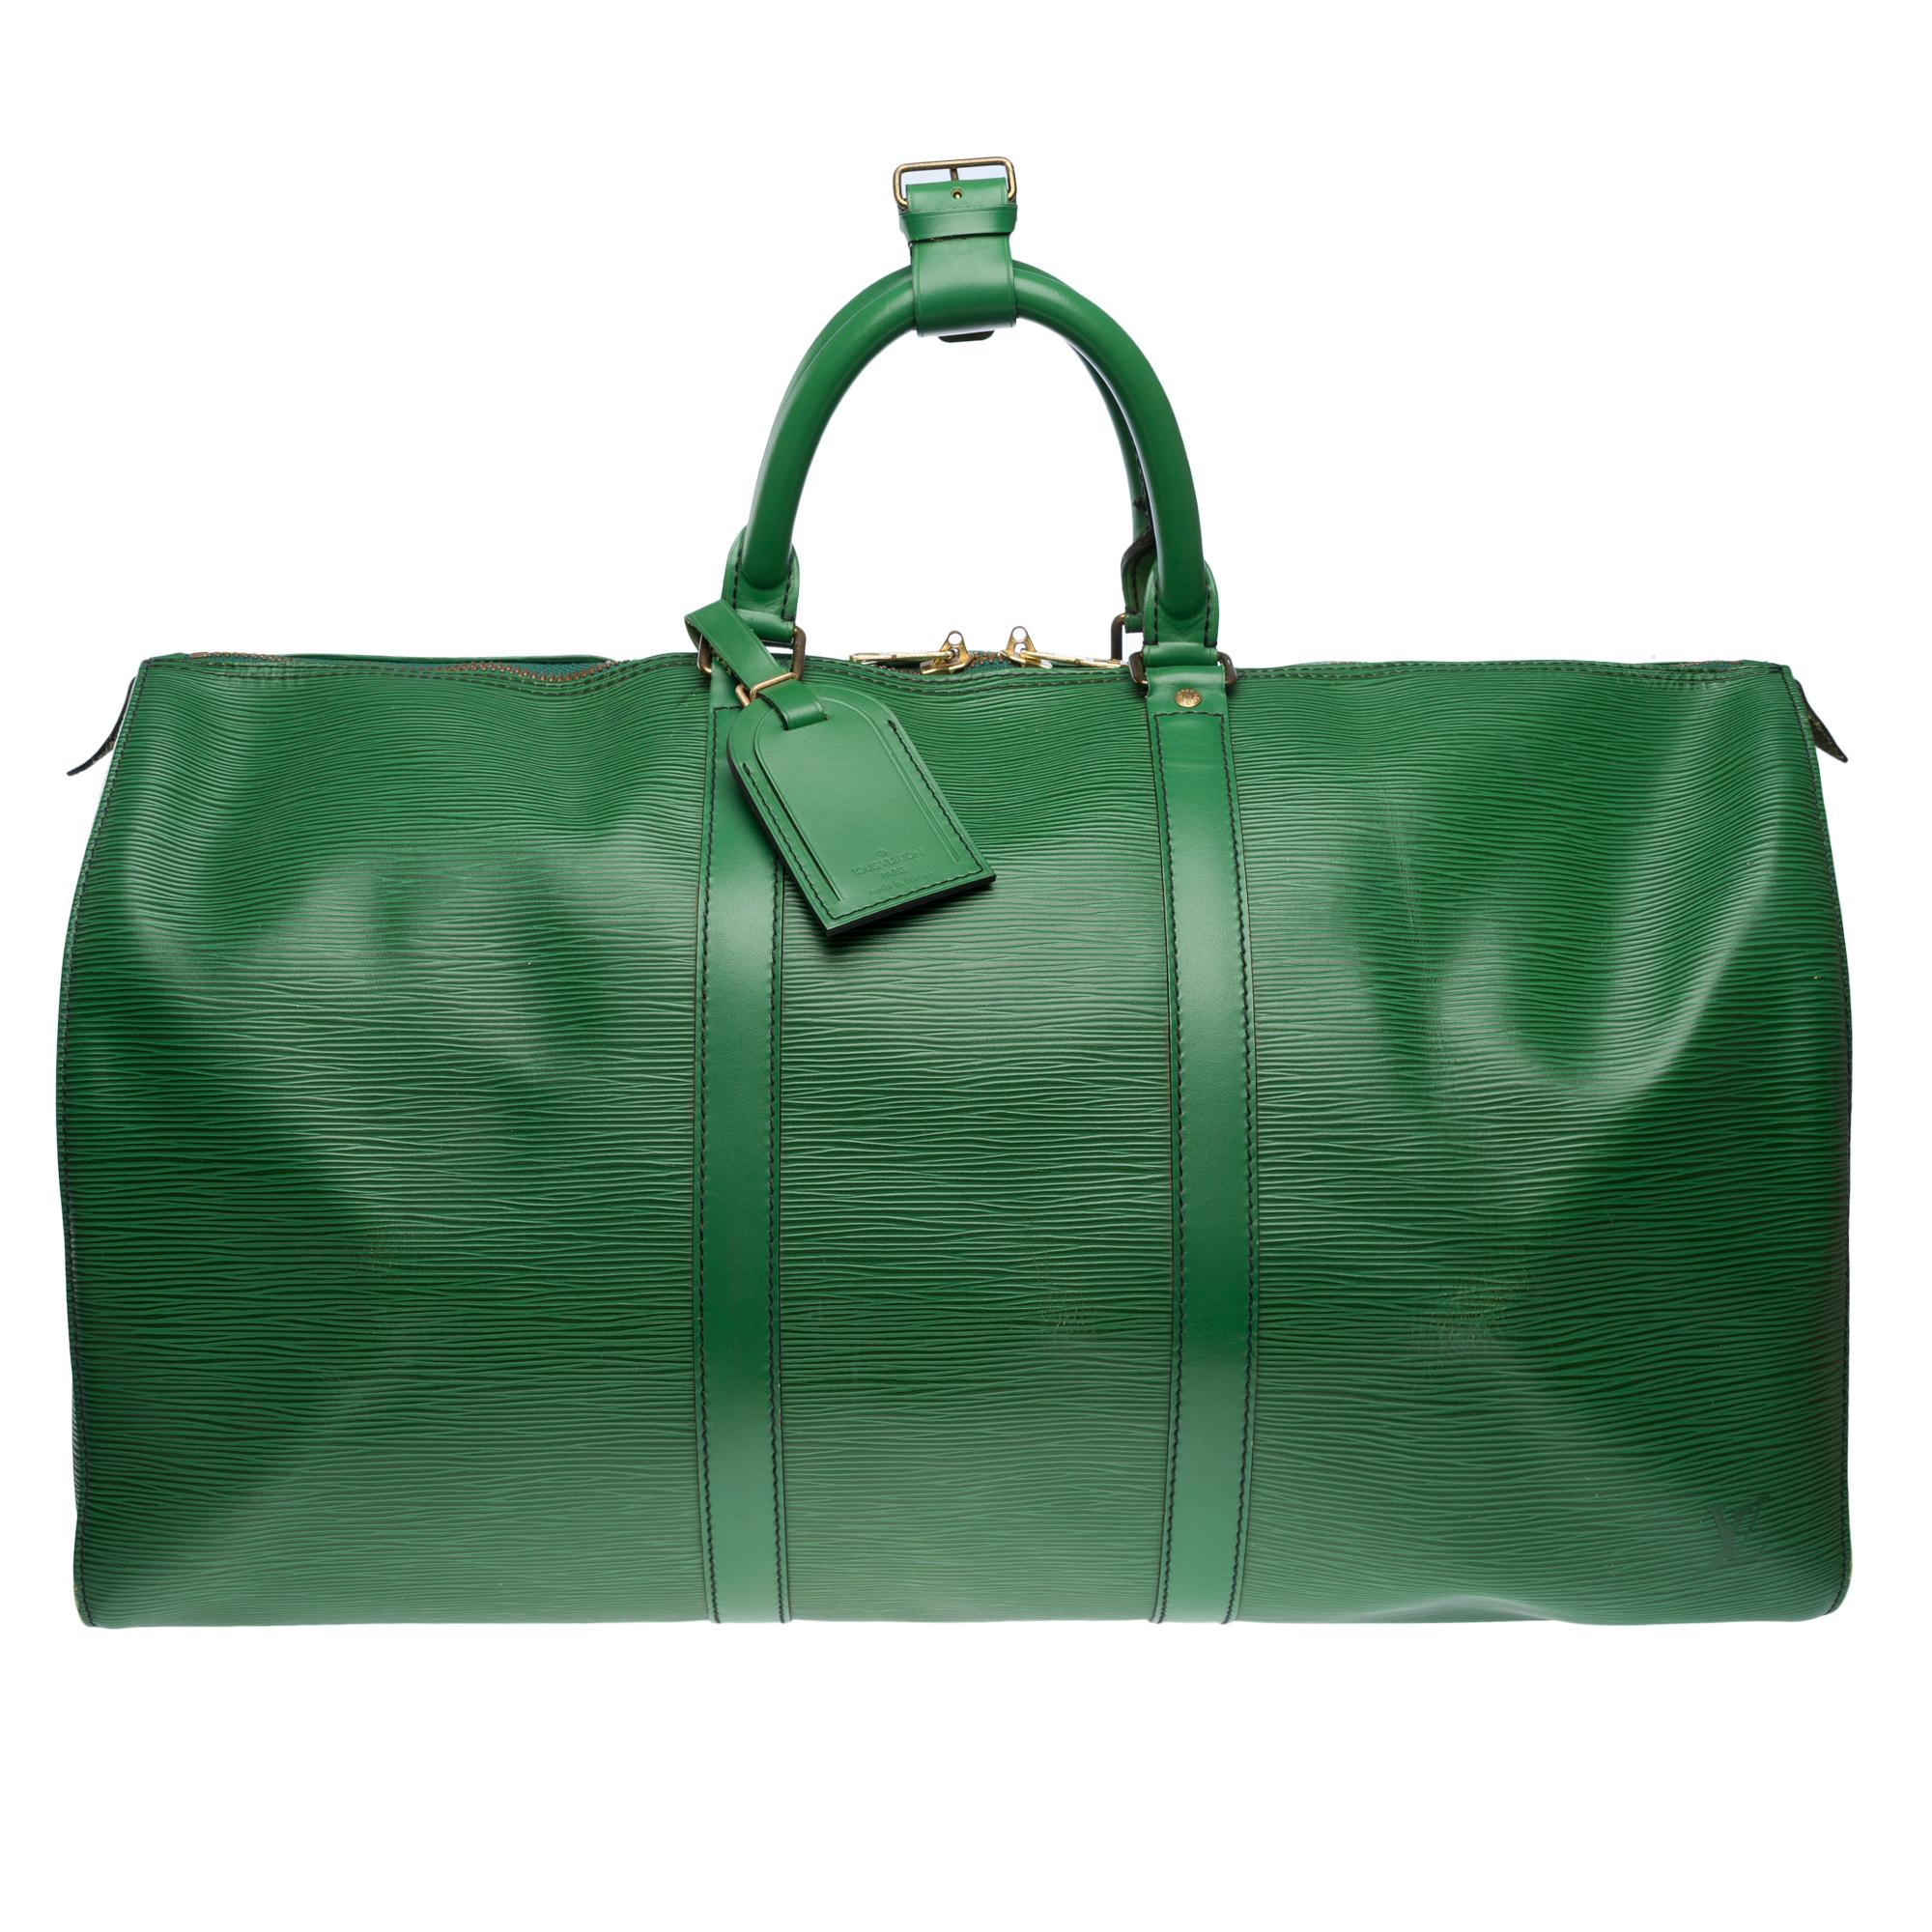 Die sehr schicke Reisetasche Louis Vuitton Keepall 50 cm in grünem Epi-Leder, doppelte Reißverschlussschieber, doppelter Griff in grünem Leder zum Tragen von Hand

Reißverschluss
Eine aufgesetzte Seitentasche
Innenfutter aus grünem